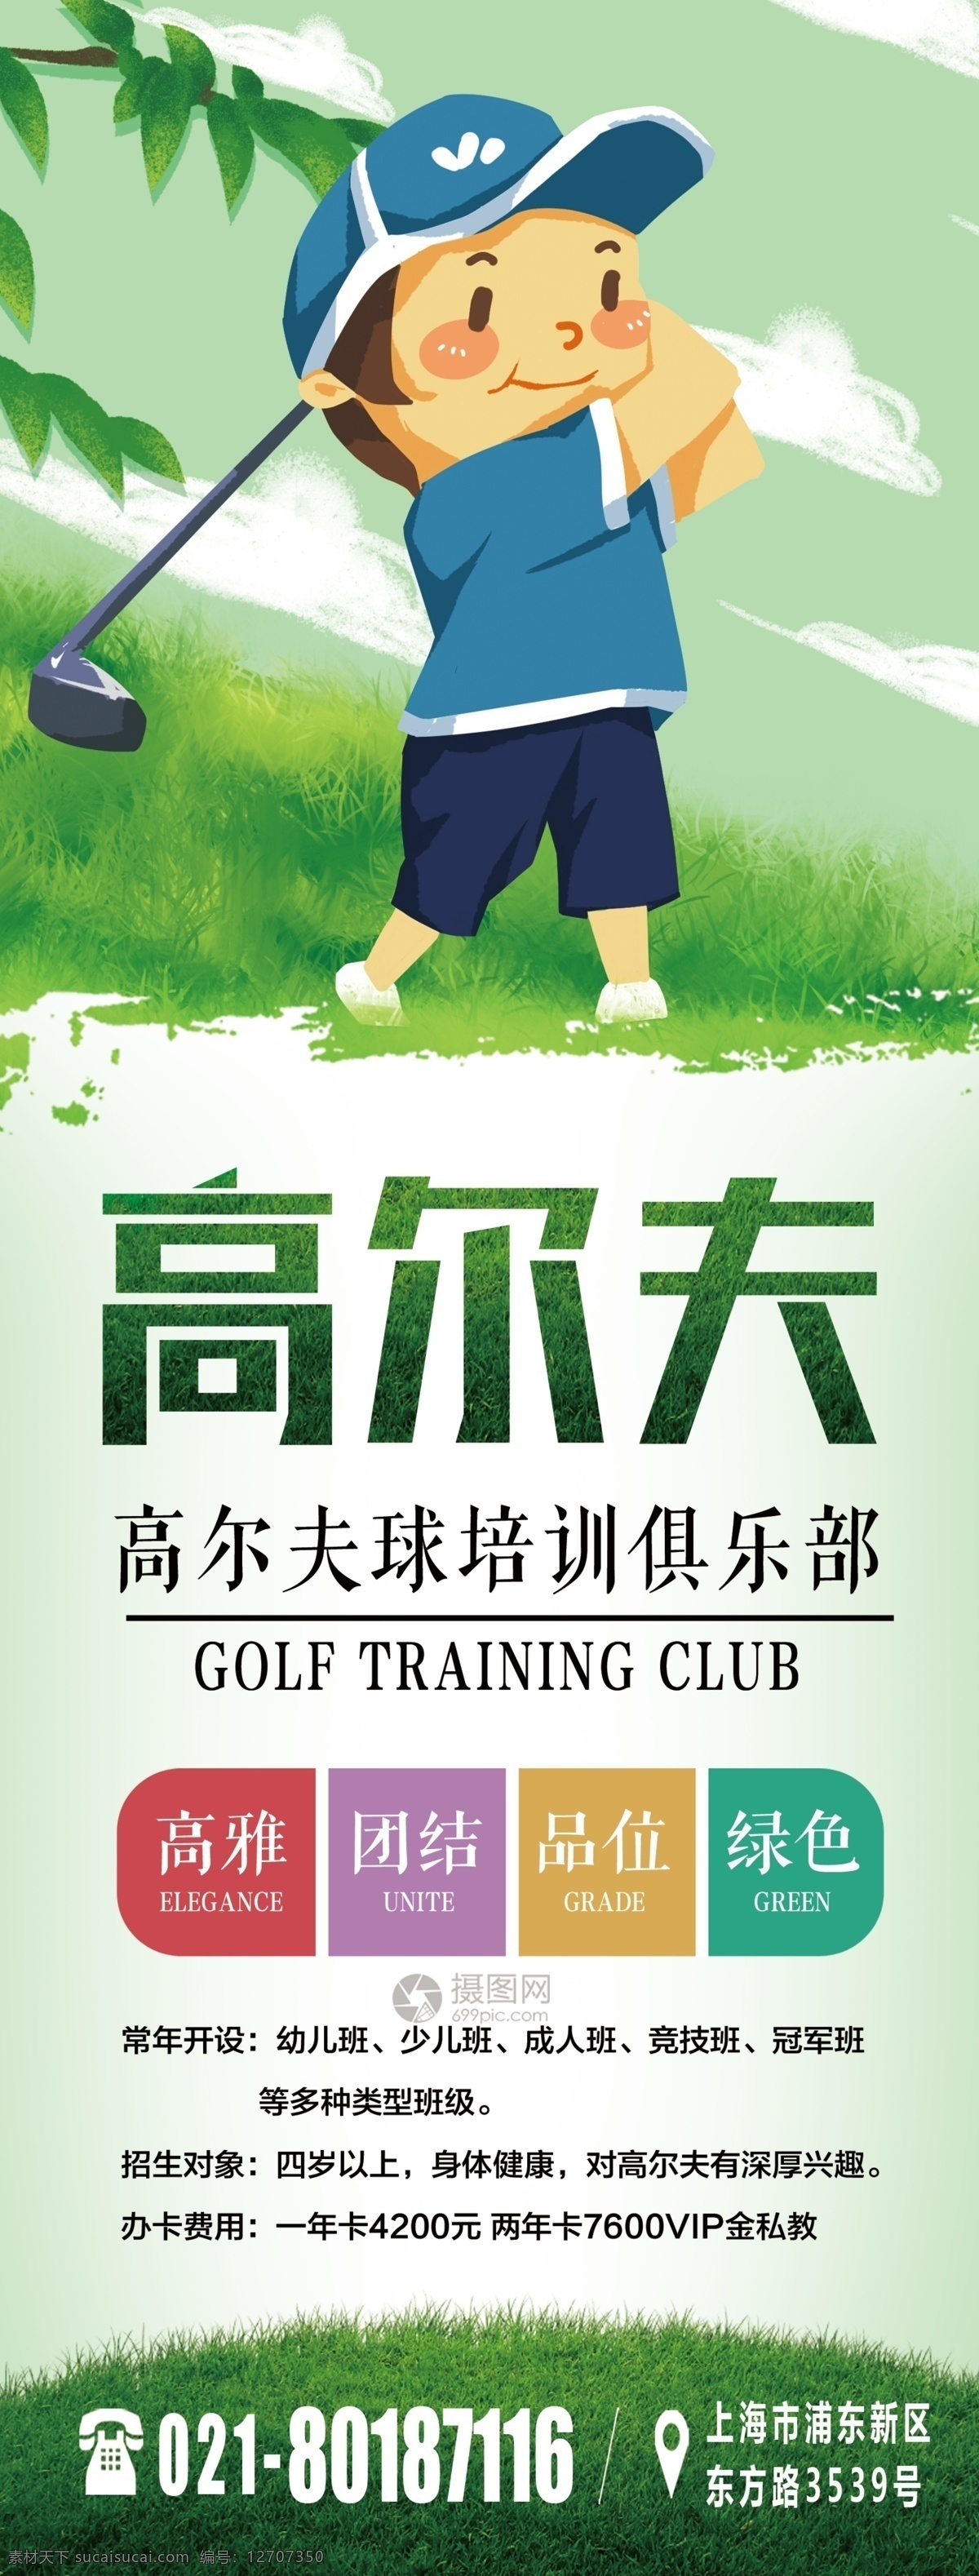 高尔夫 培训 俱乐部 x 展架 高尔夫比赛 高尔夫运动 高尔夫俱乐部 x展架 易拉宝 绿色